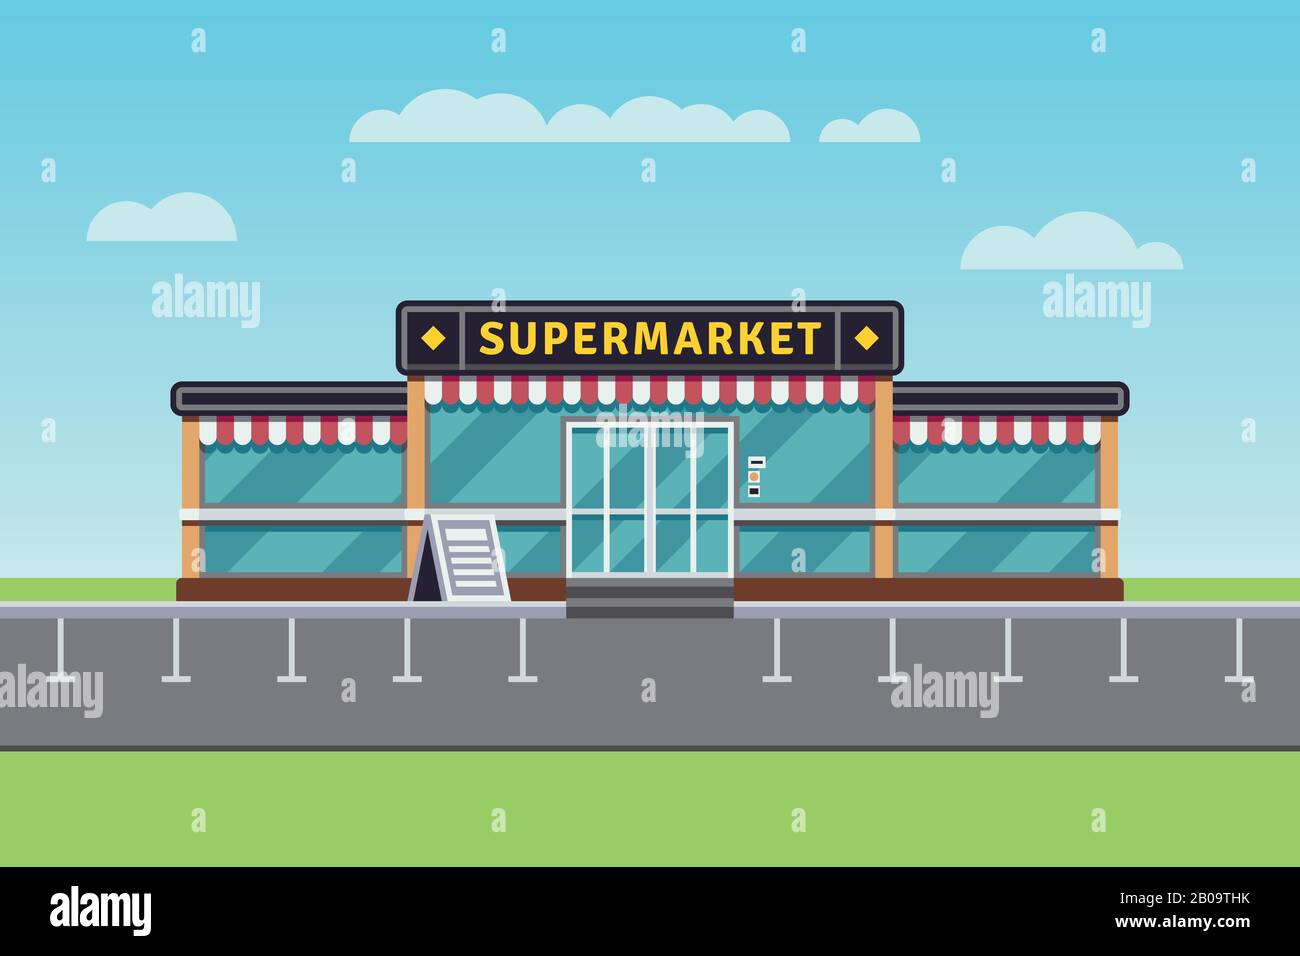 Supermarktgebäude, Einkaufsmarkt, Vektorgrafiken in Einkaufszentren. Großes Marktgebäude, Abbildung des Marktes für kommerzielle Ladengeschäft Stock Vektor